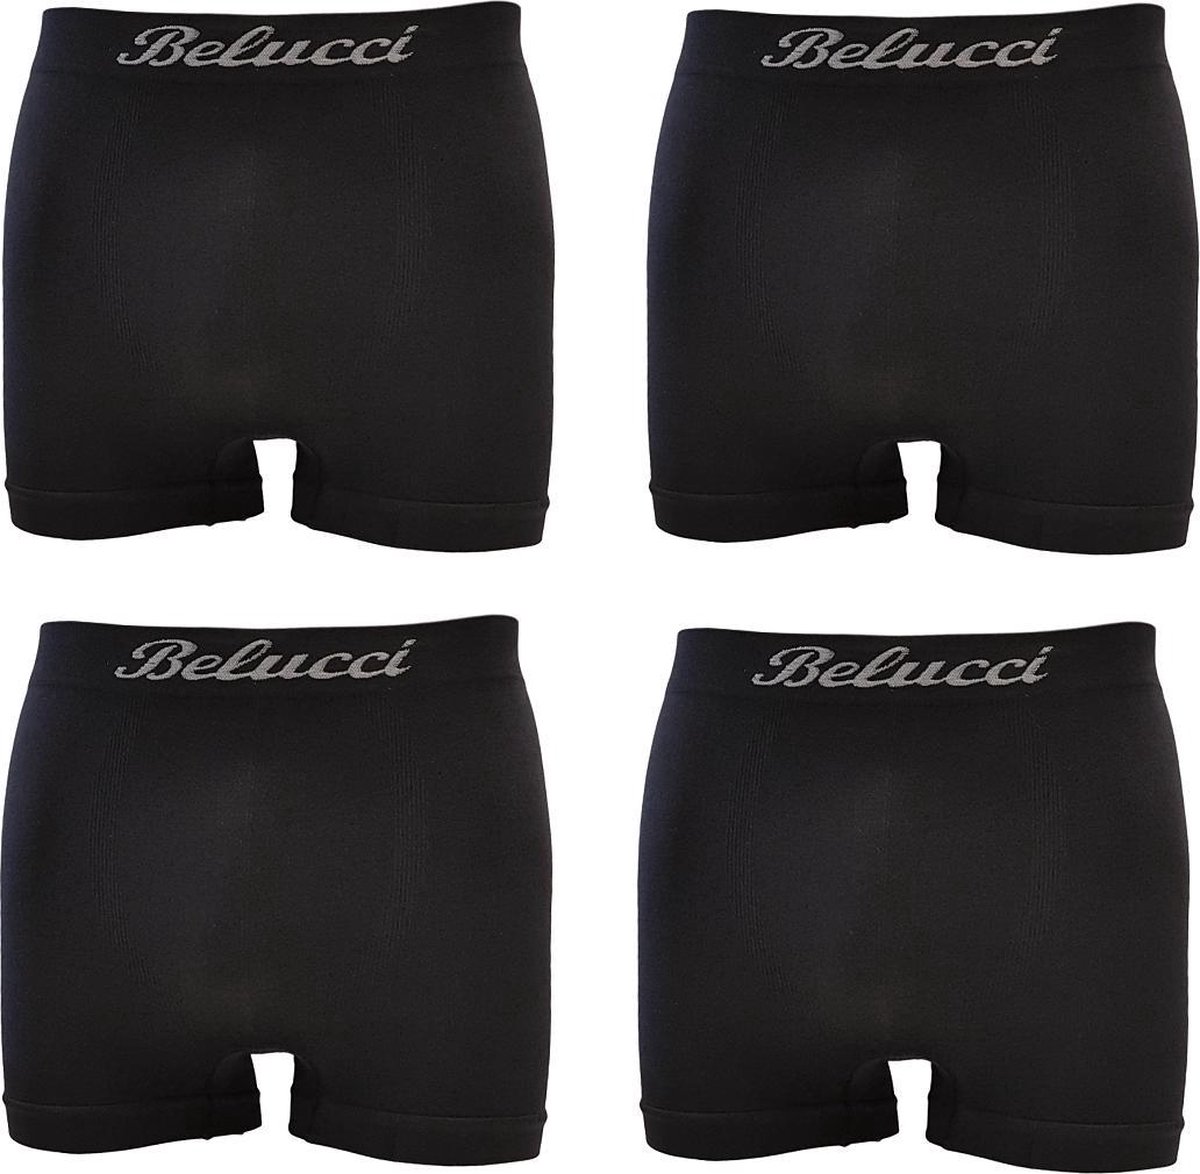 Belucci heren boxershorts set van 4 stuks zwart maat M/L